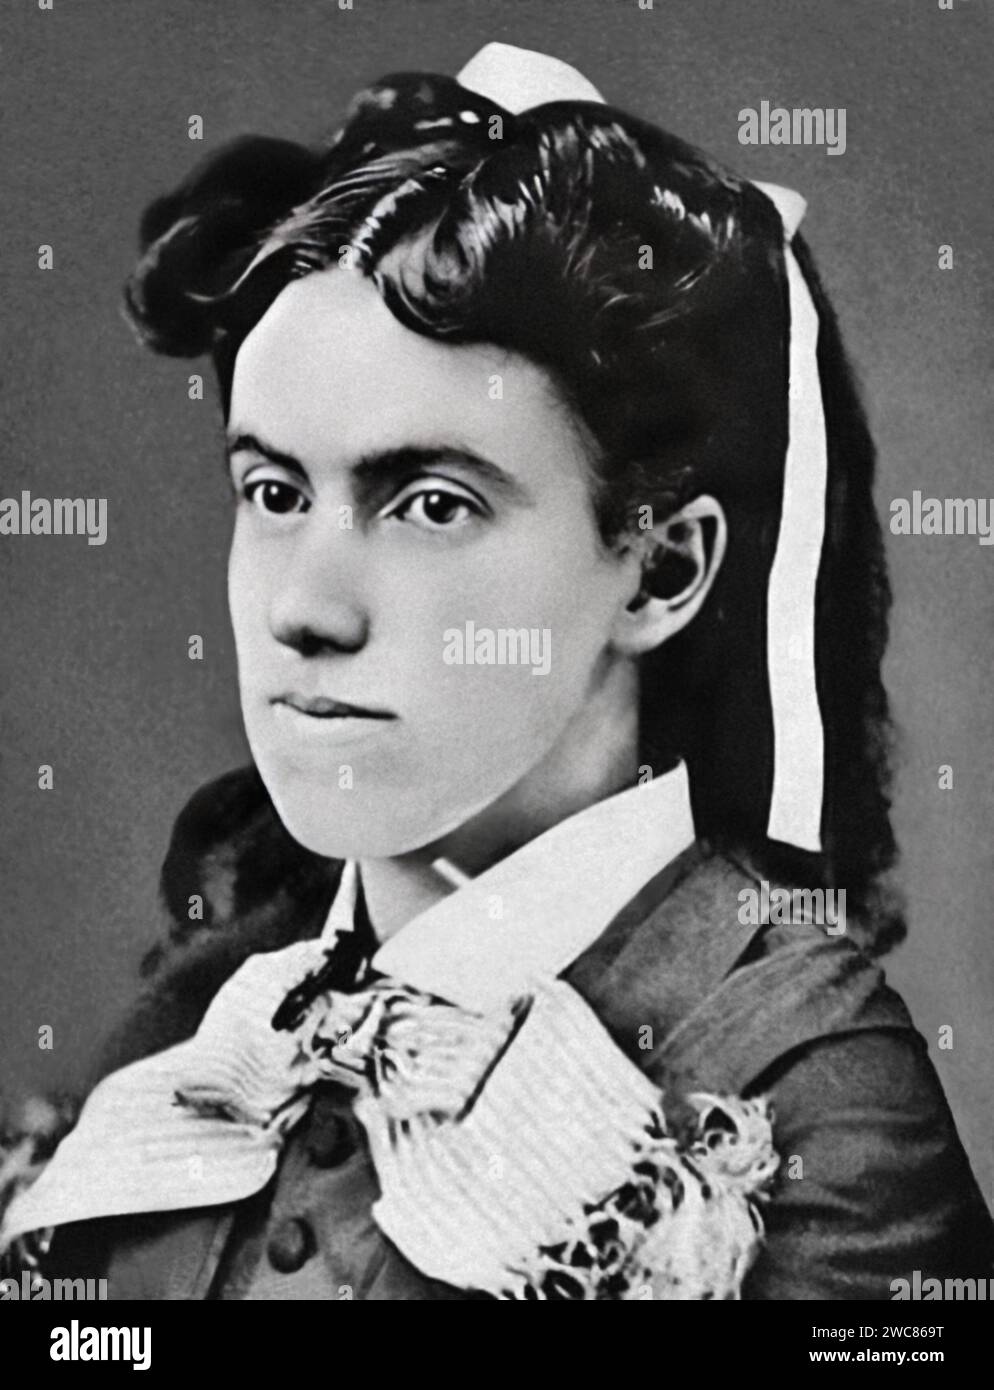 Charlotte Digges (Lottie) Moon (1840-1912) è stata una missionaria battista americana che ha trascorso quasi 40 anni in Cina impegnata in missioni cristiane per portare il Vangelo di Cristo al popolo cinese. Foto Stock